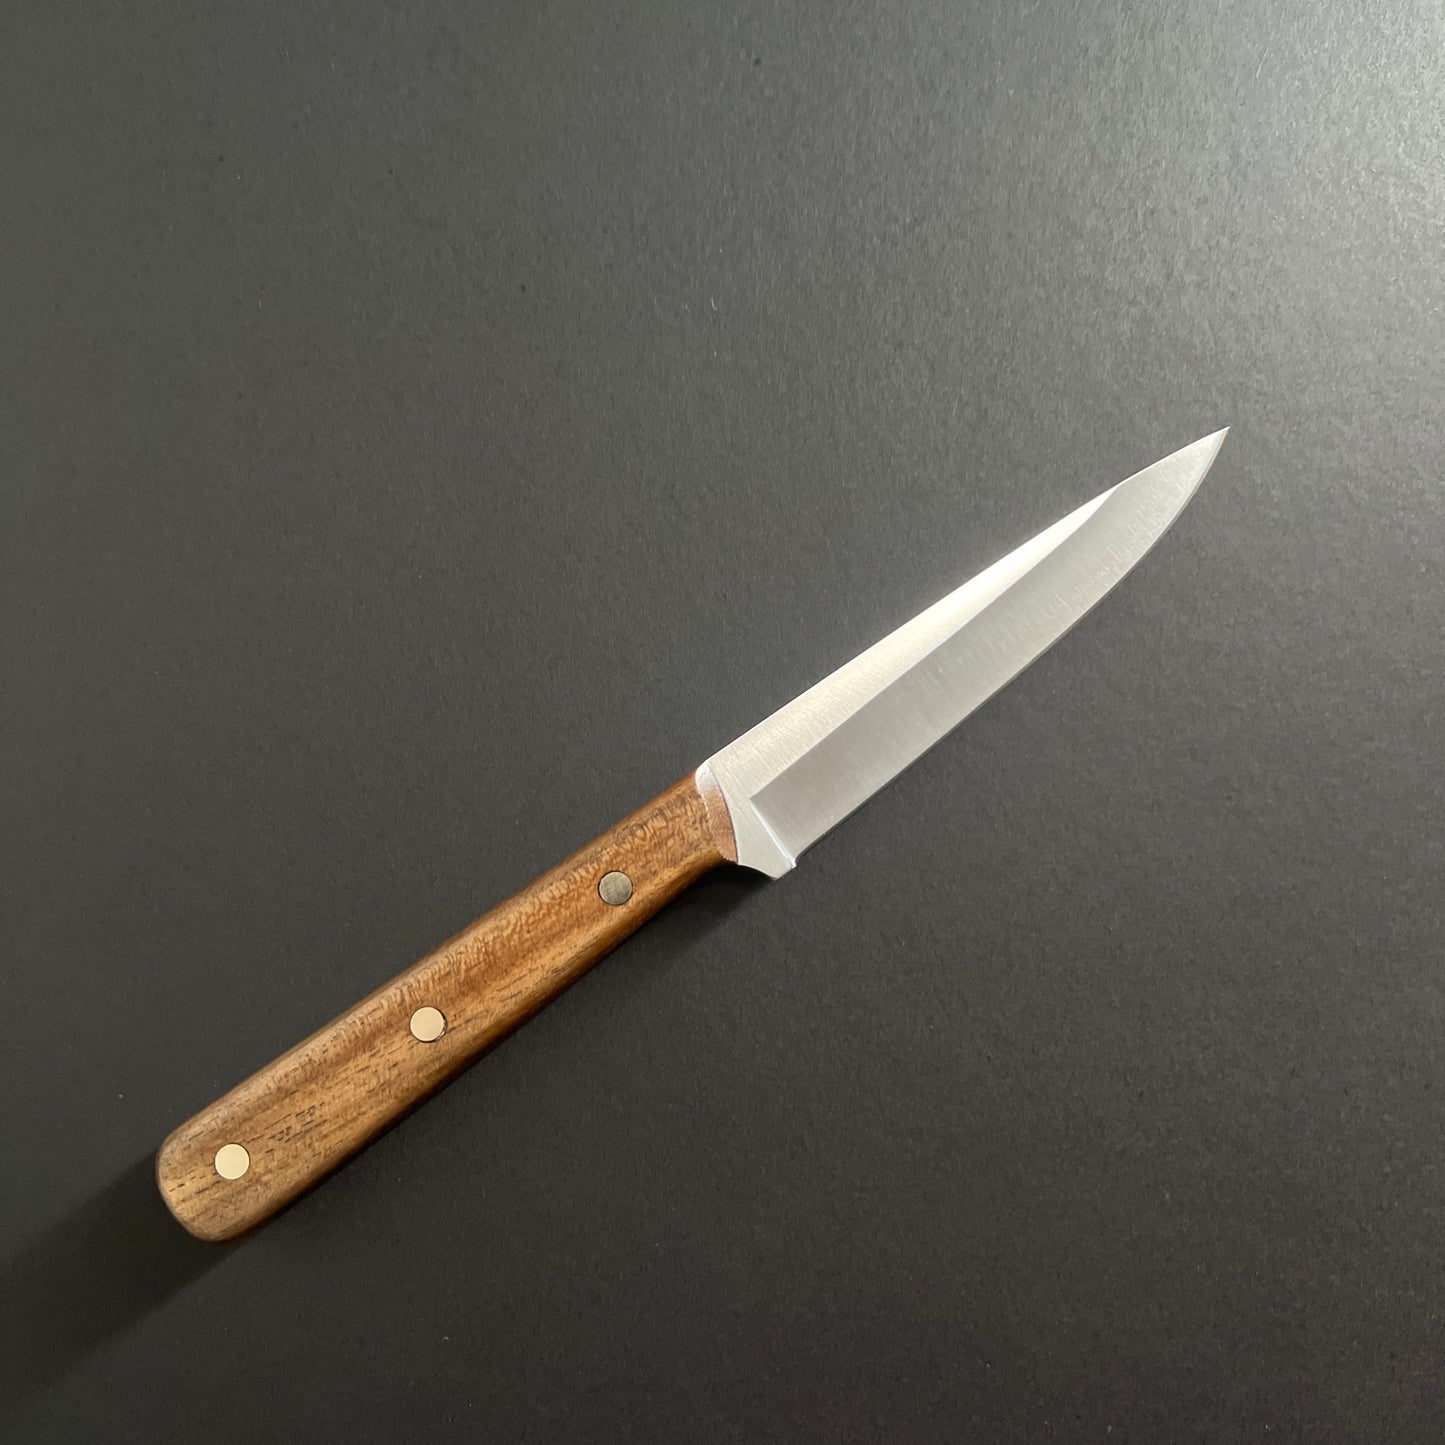 4" Bar / Paring Knife - No. 2193